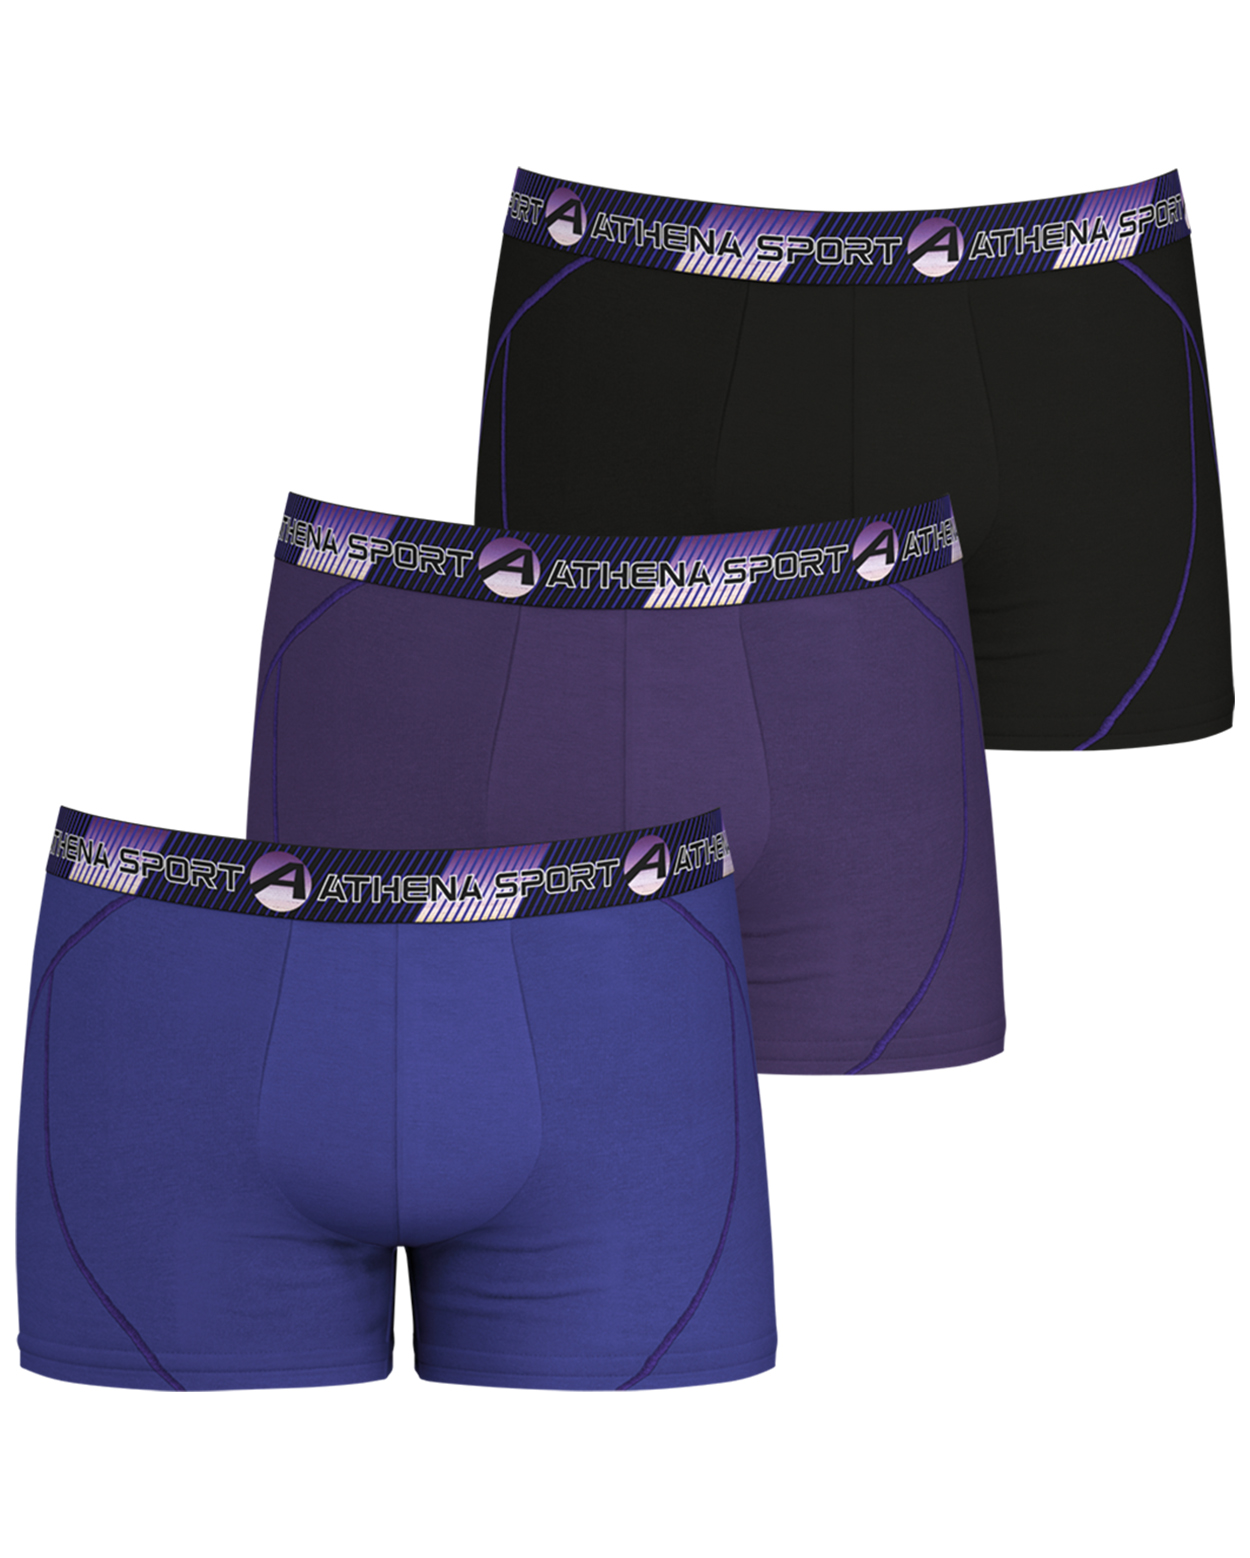 lot de 3 boxers athena multicolore avec nom de la marque inscrit en violet sur la ceinture élastiquée noire